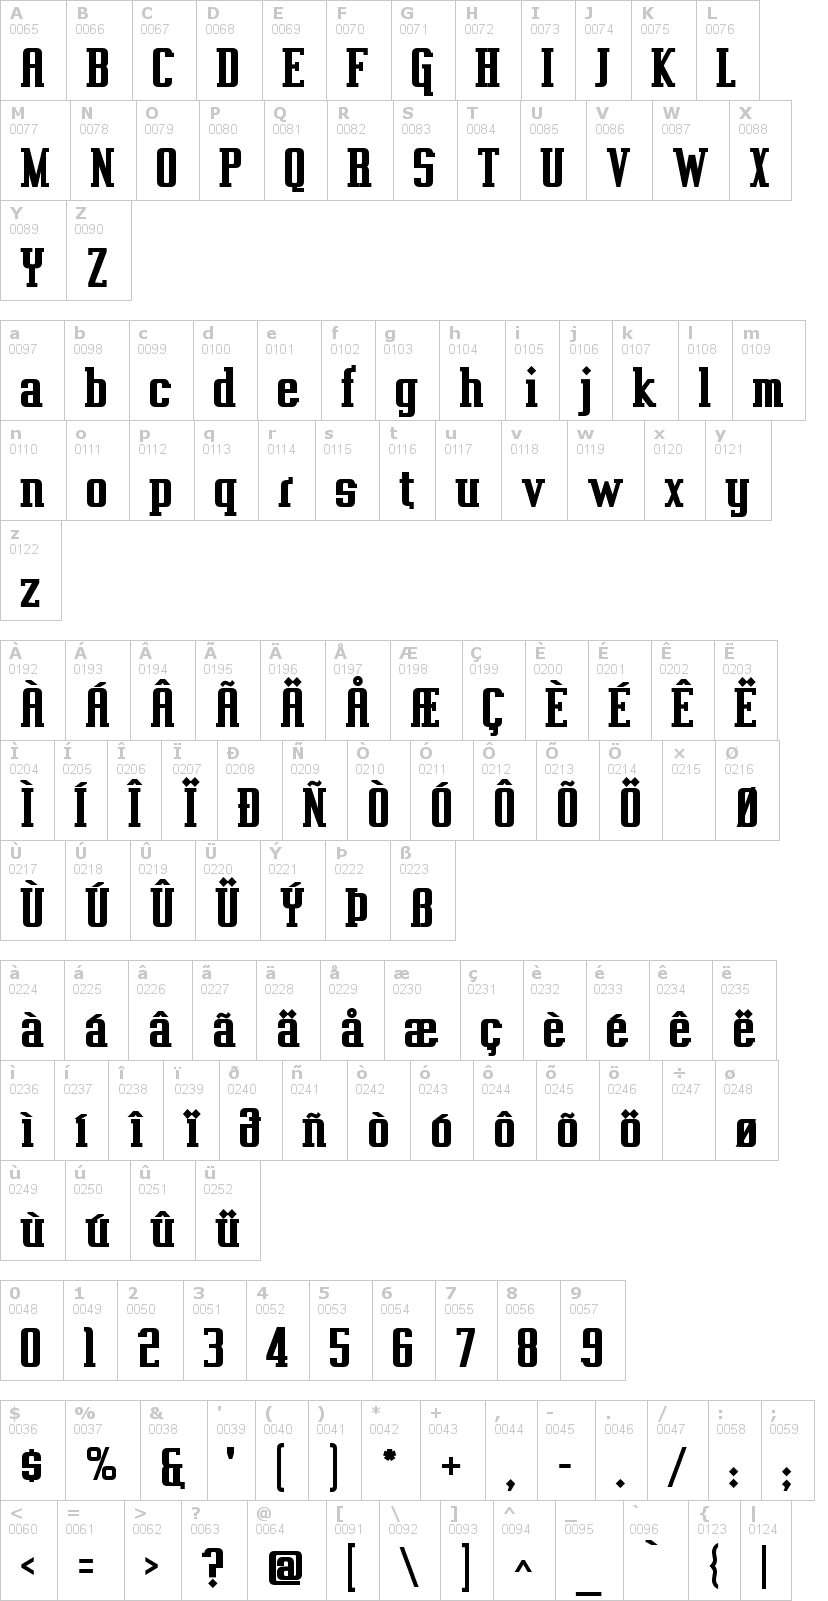 Lettere dell'alfabeto del font vahika con le quali è possibile realizzare adesivi prespaziati